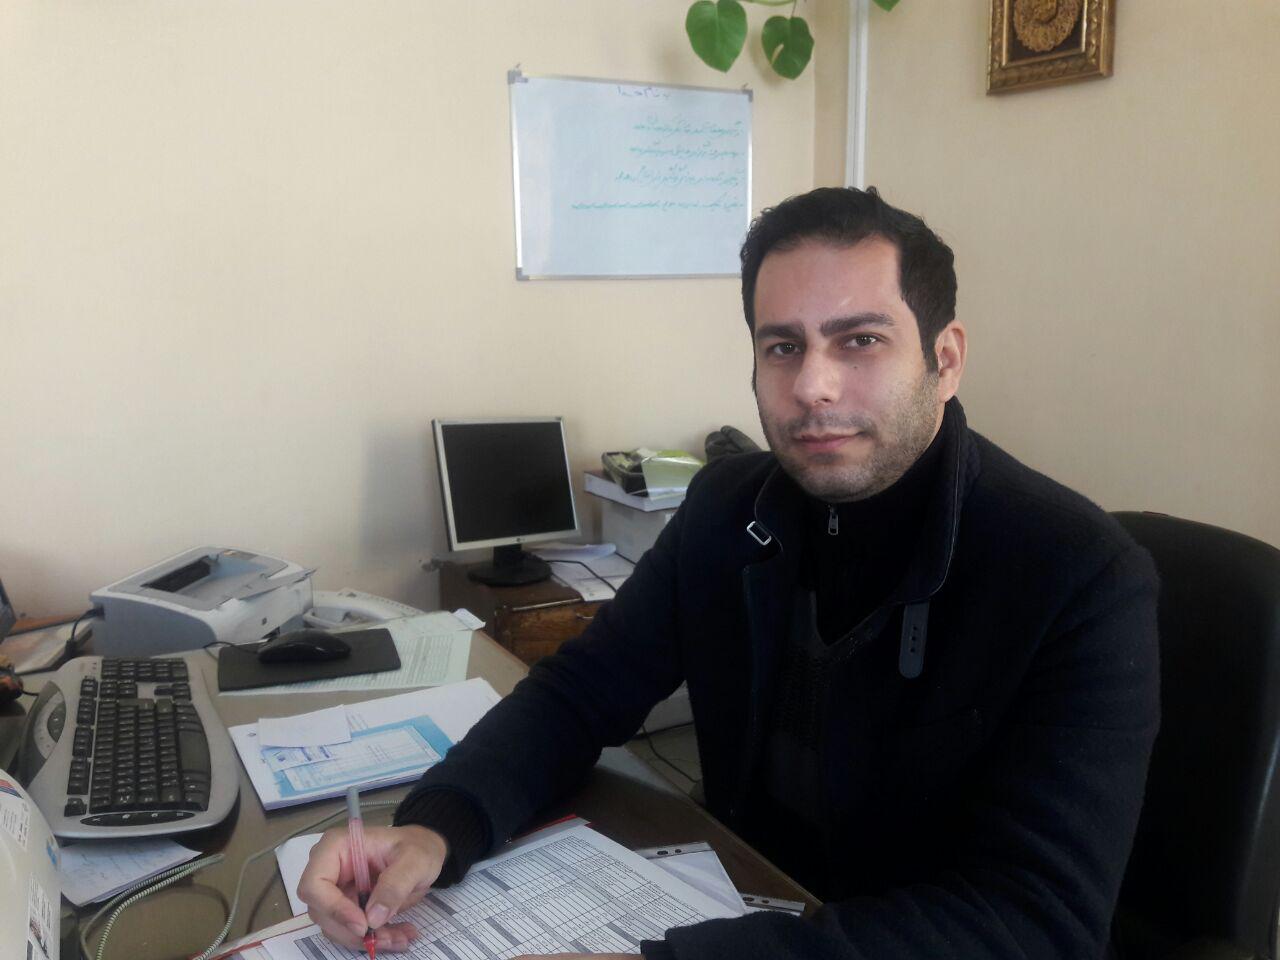 شهرام شریفی رئیس اداره میراث فرهنگی و گردشگری شهرستان دماوند